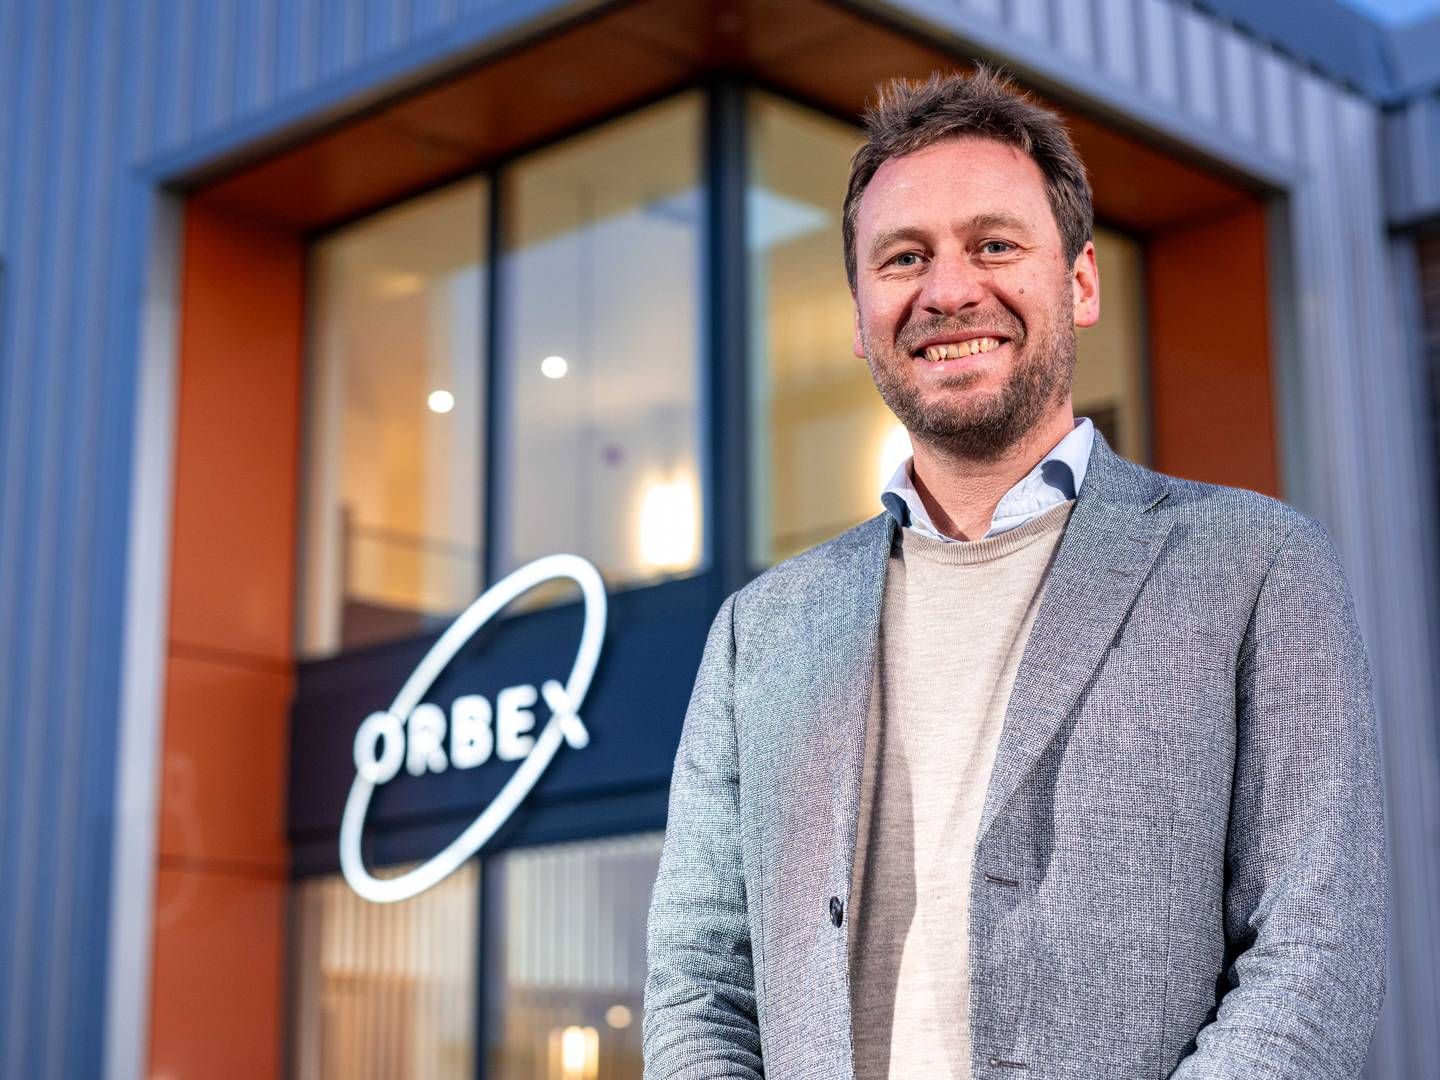 Adm. direktør Phillip Chambers, Orbex, har en baggrund som bl.a. it-iværksætter i Danmark, | Foto: Pr